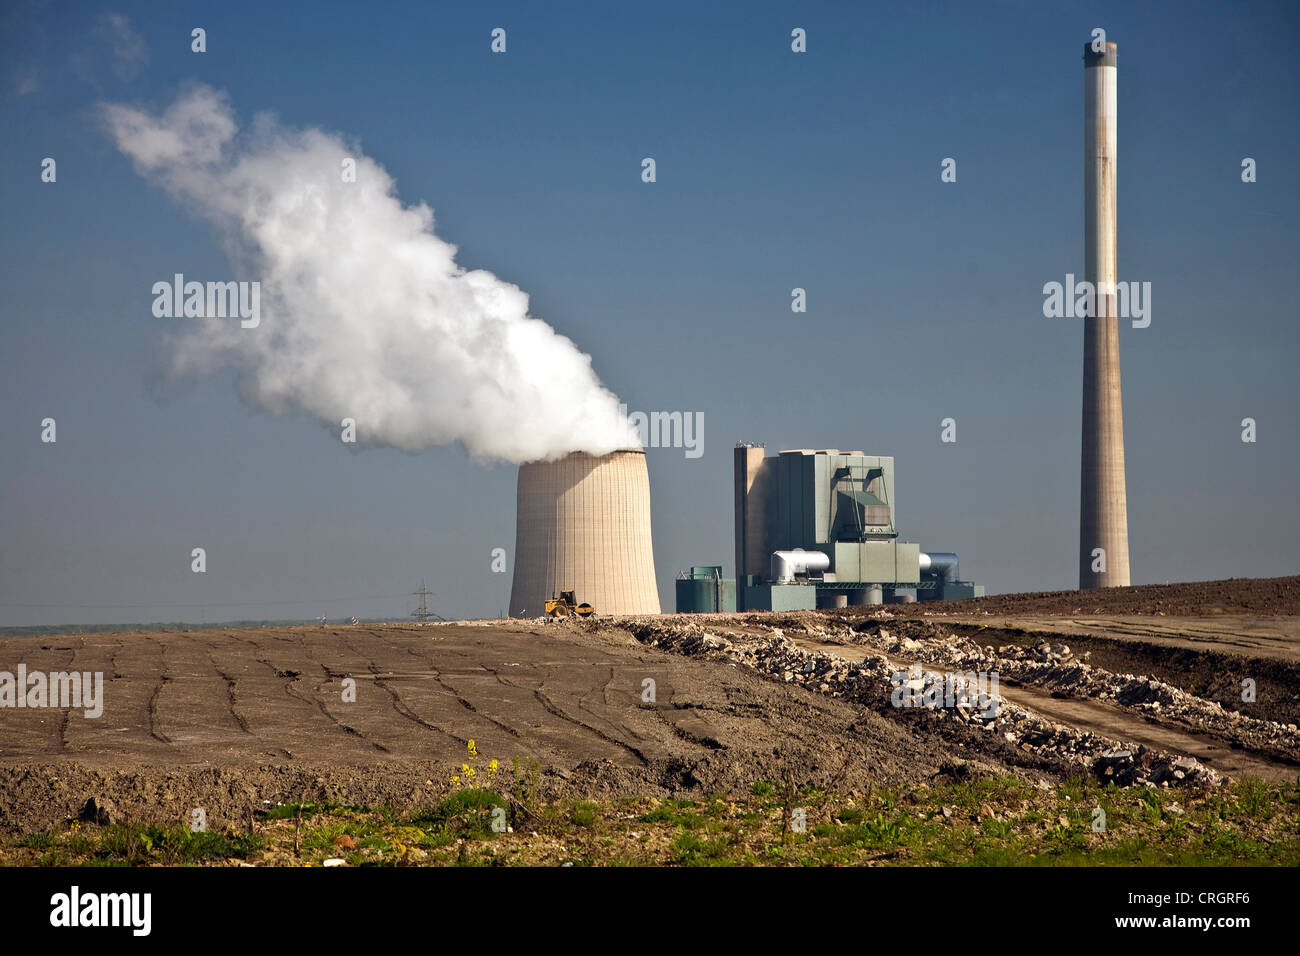 Vista desde el grosses Holz arsenal en la central eléctrica de carbón cerca de Bergkamen, Alemania, Renania del Norte-Westfalia, área de Ruhr, Bergkamen Foto de stock